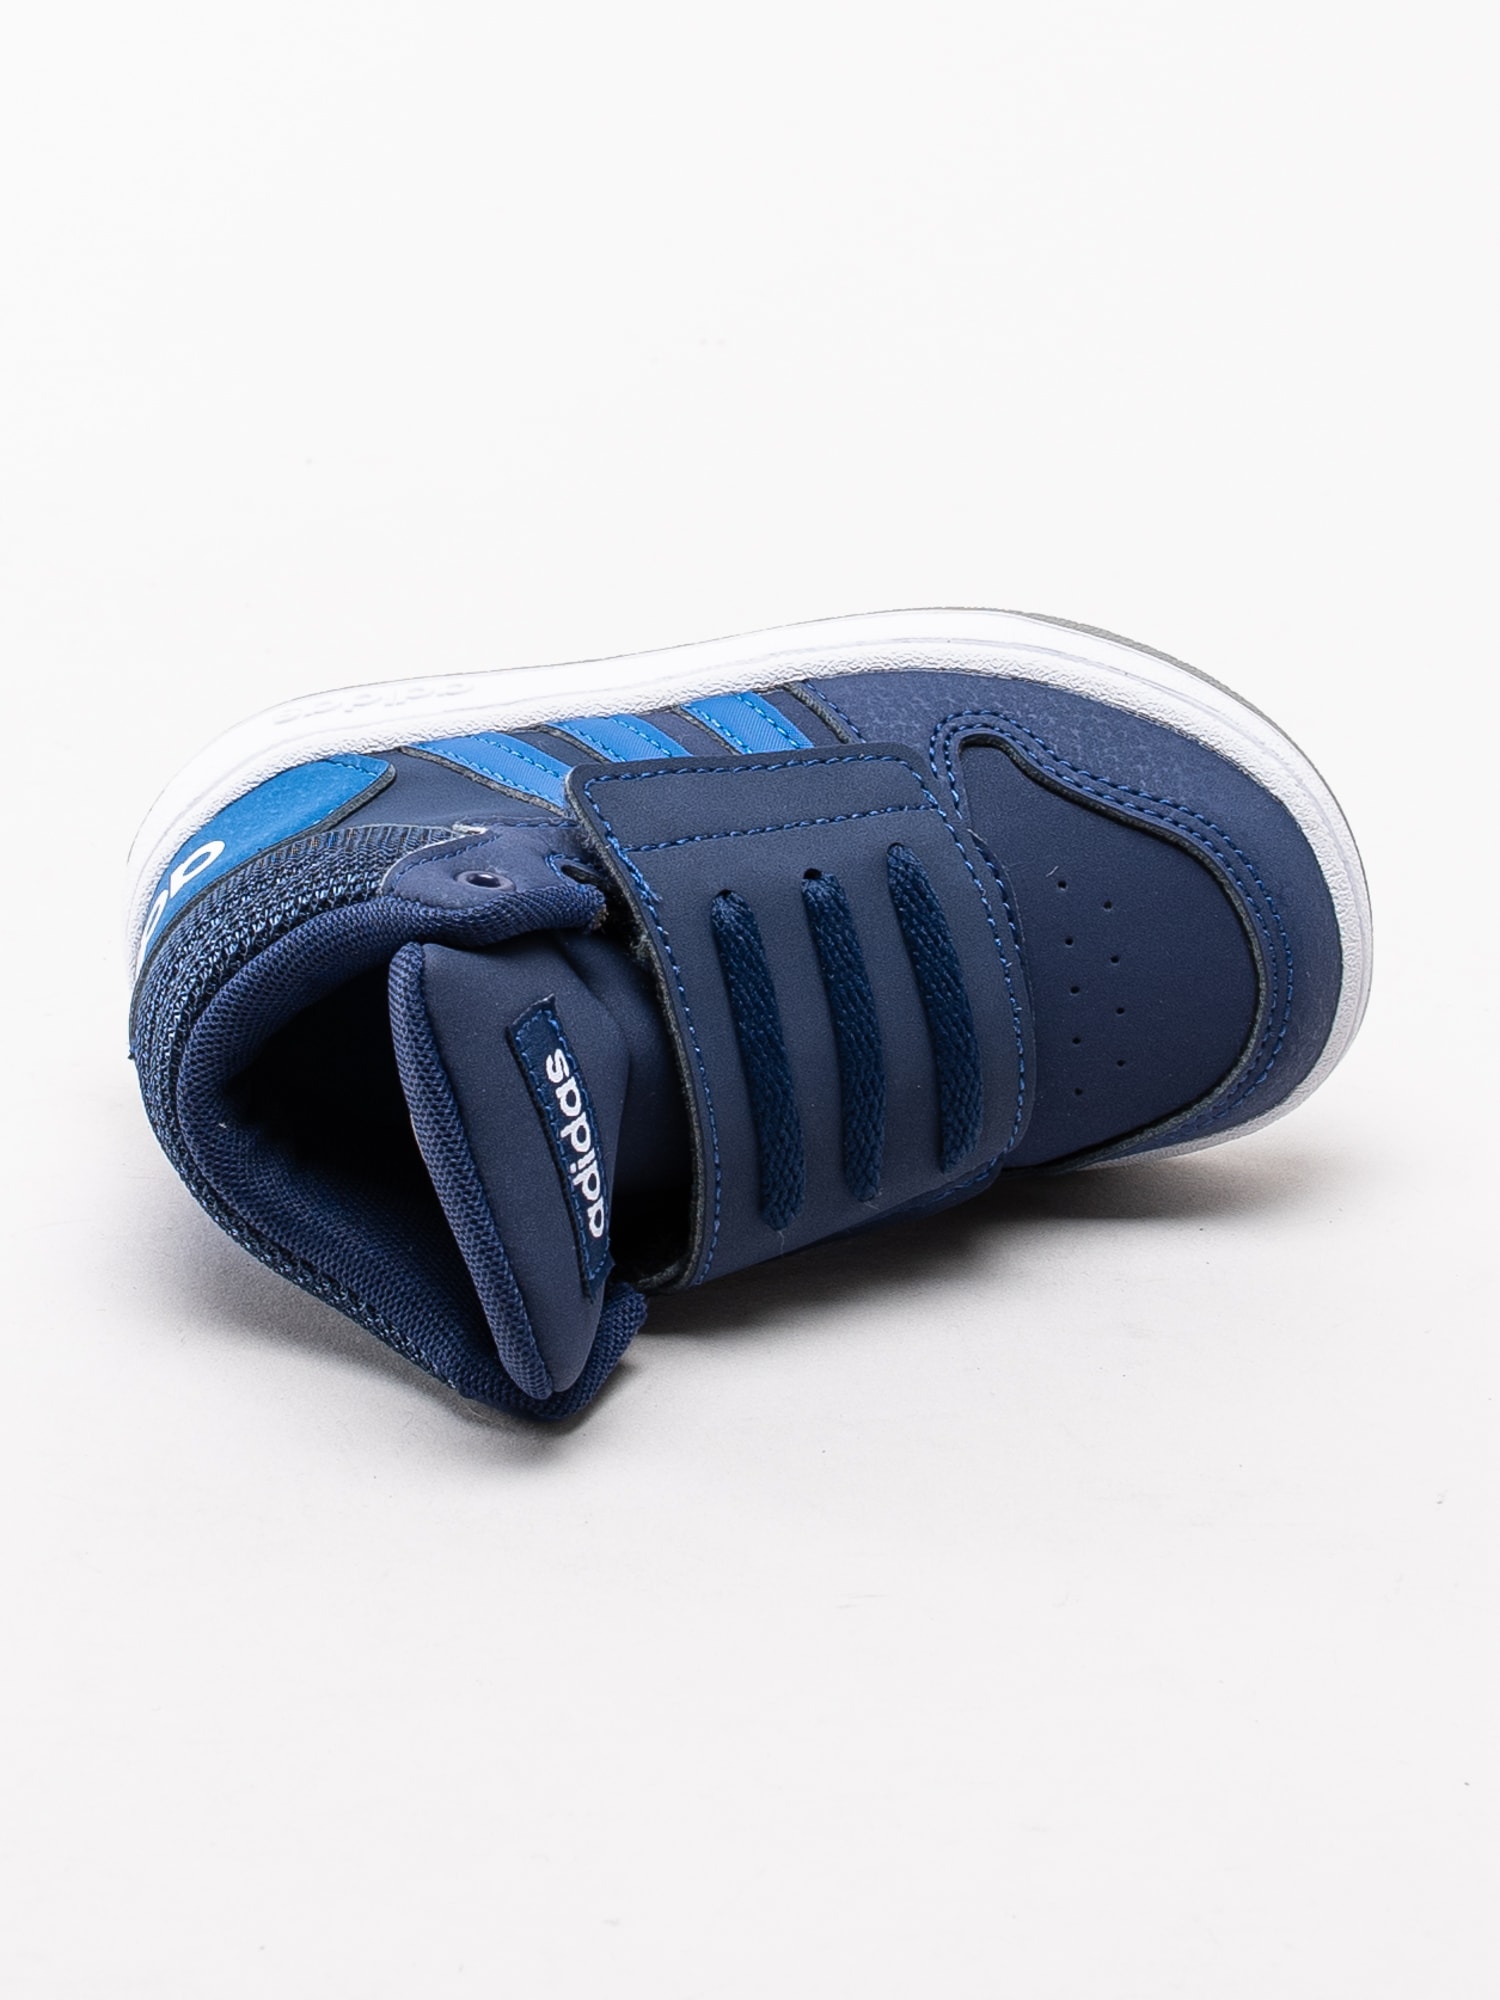 56193008 Adidas Hoops Mid 2.0 Infant EE6714 mörkblå höga sneakers för dem små med kardborre-4